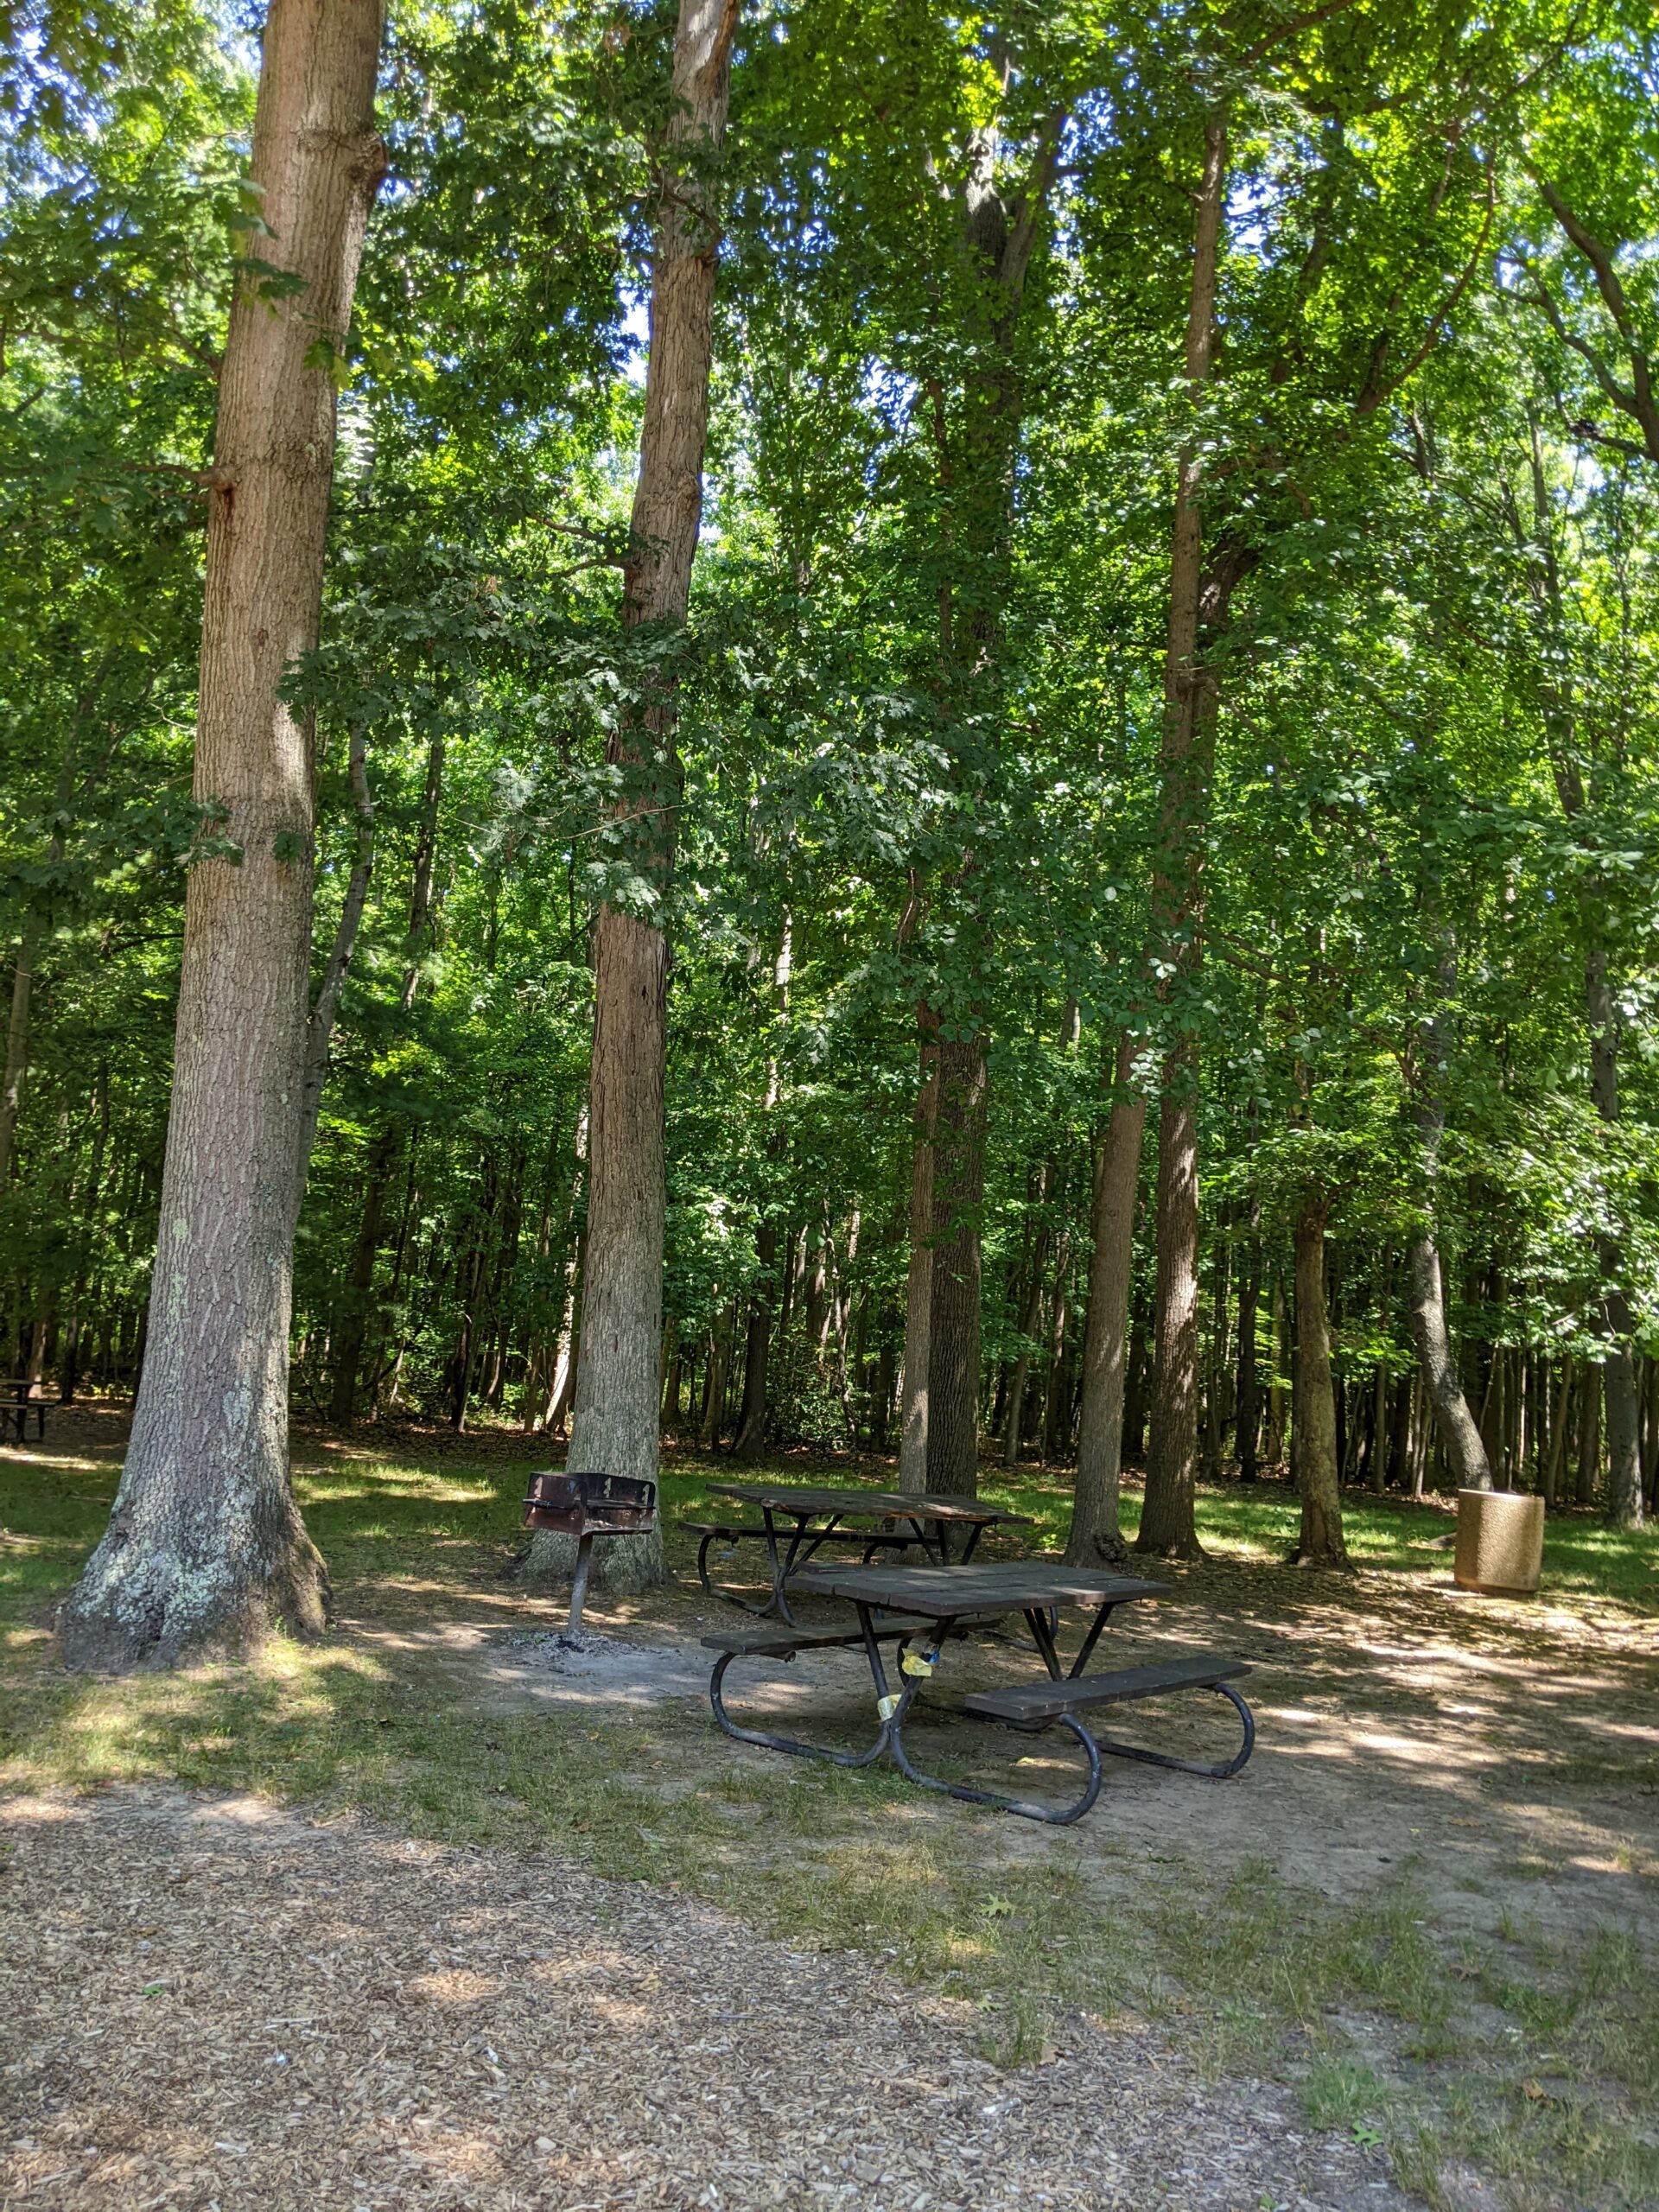 Veteran's Park in Hamilton Township NJ - SHADY - picnic tables under trees